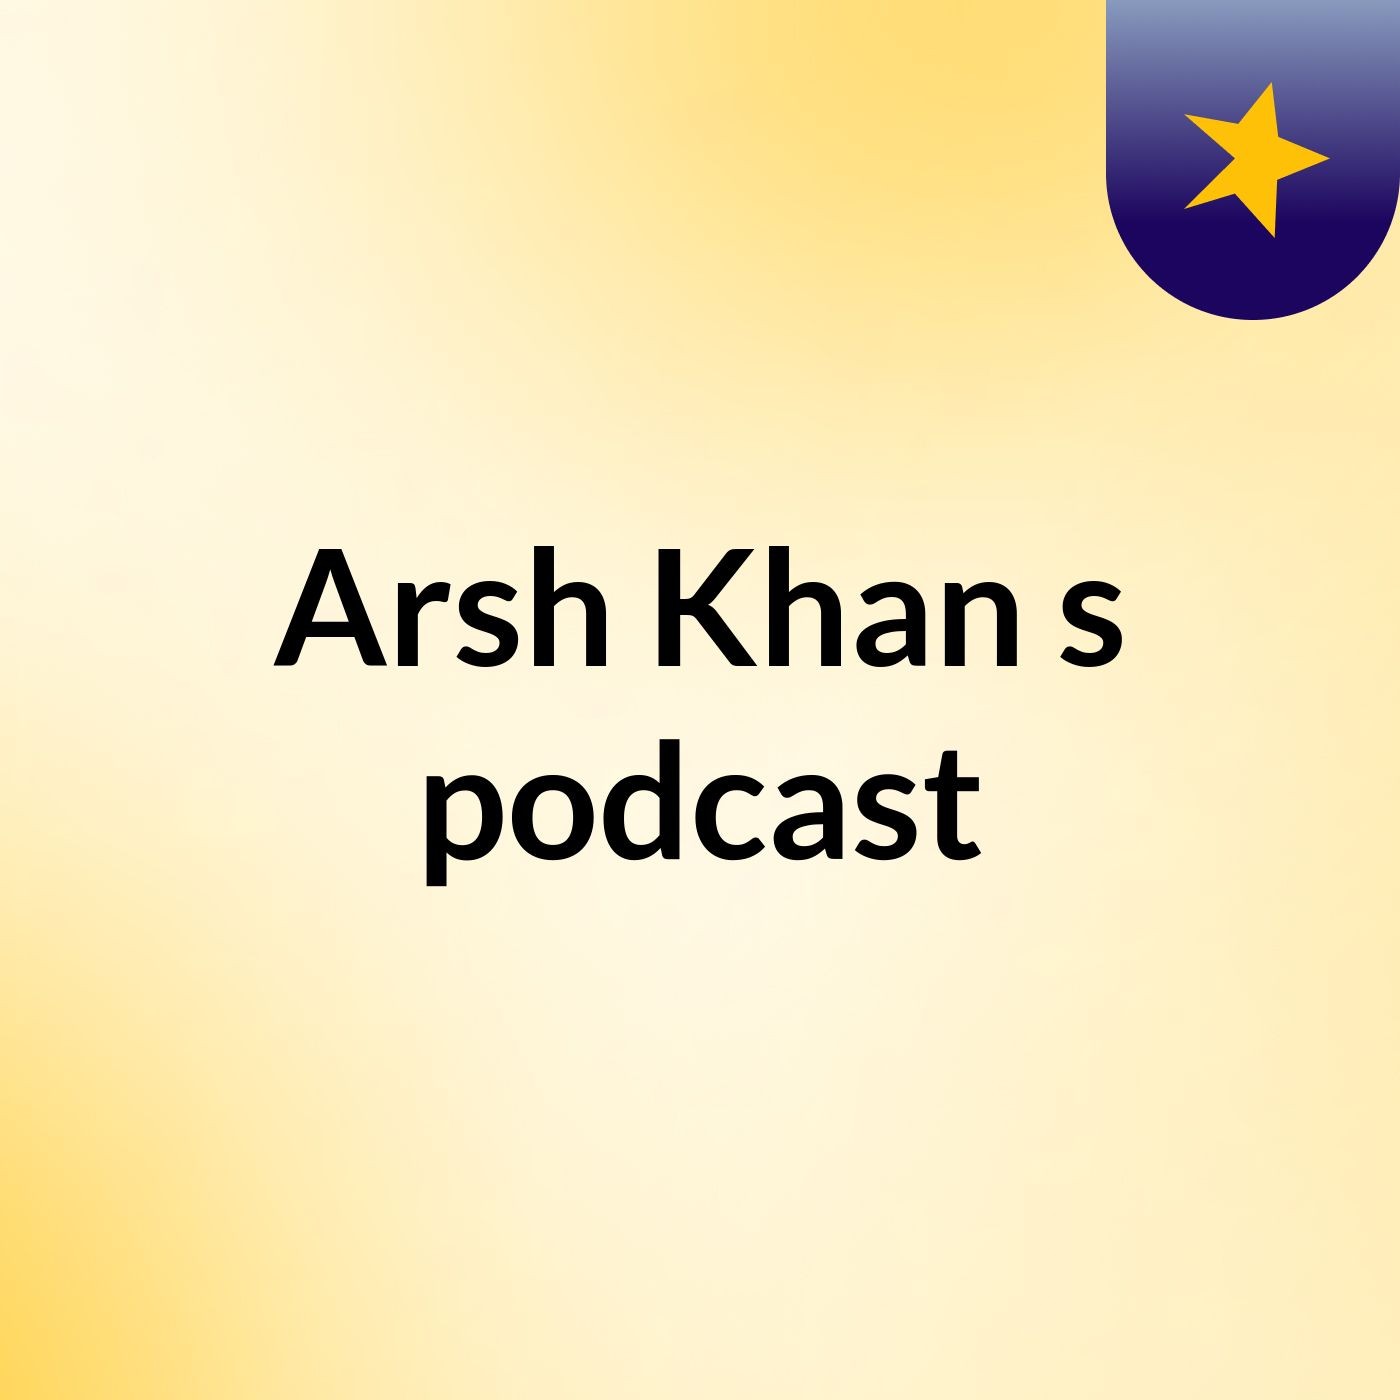 Episode 6 - Arsh Khan's podcast